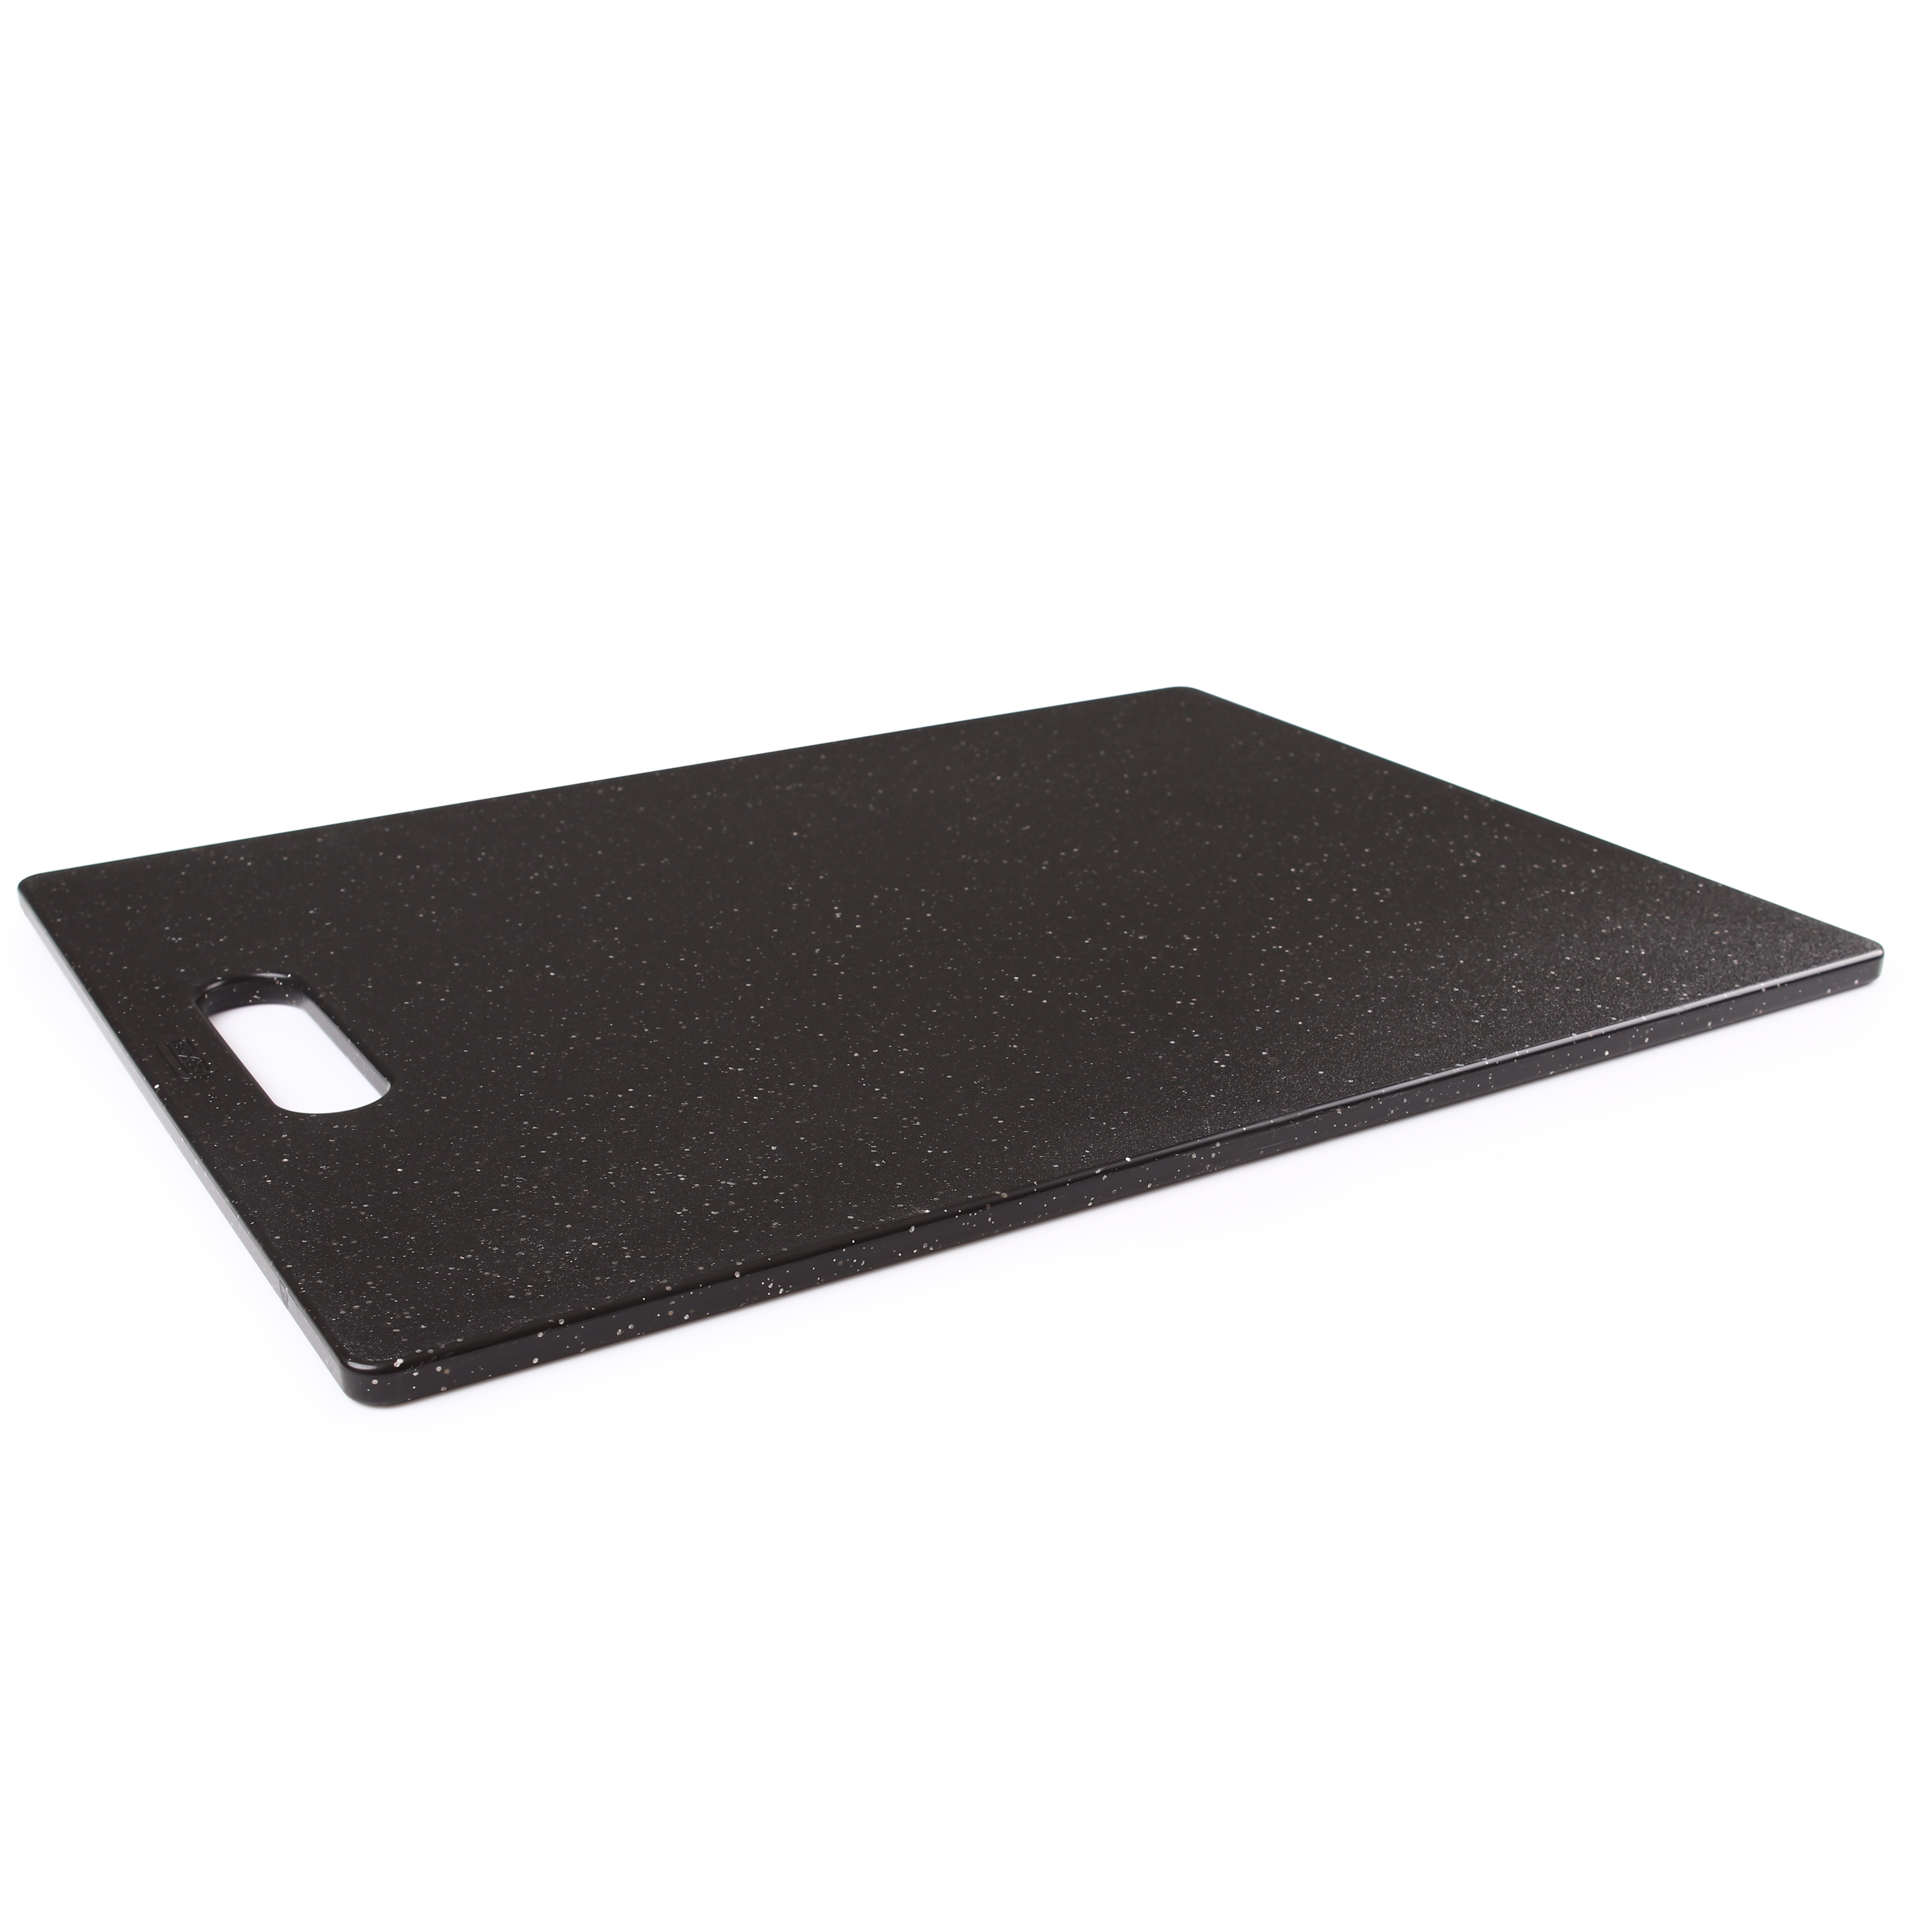 Gefu - Polypropylene Cutting Board 240x150x0.8cm